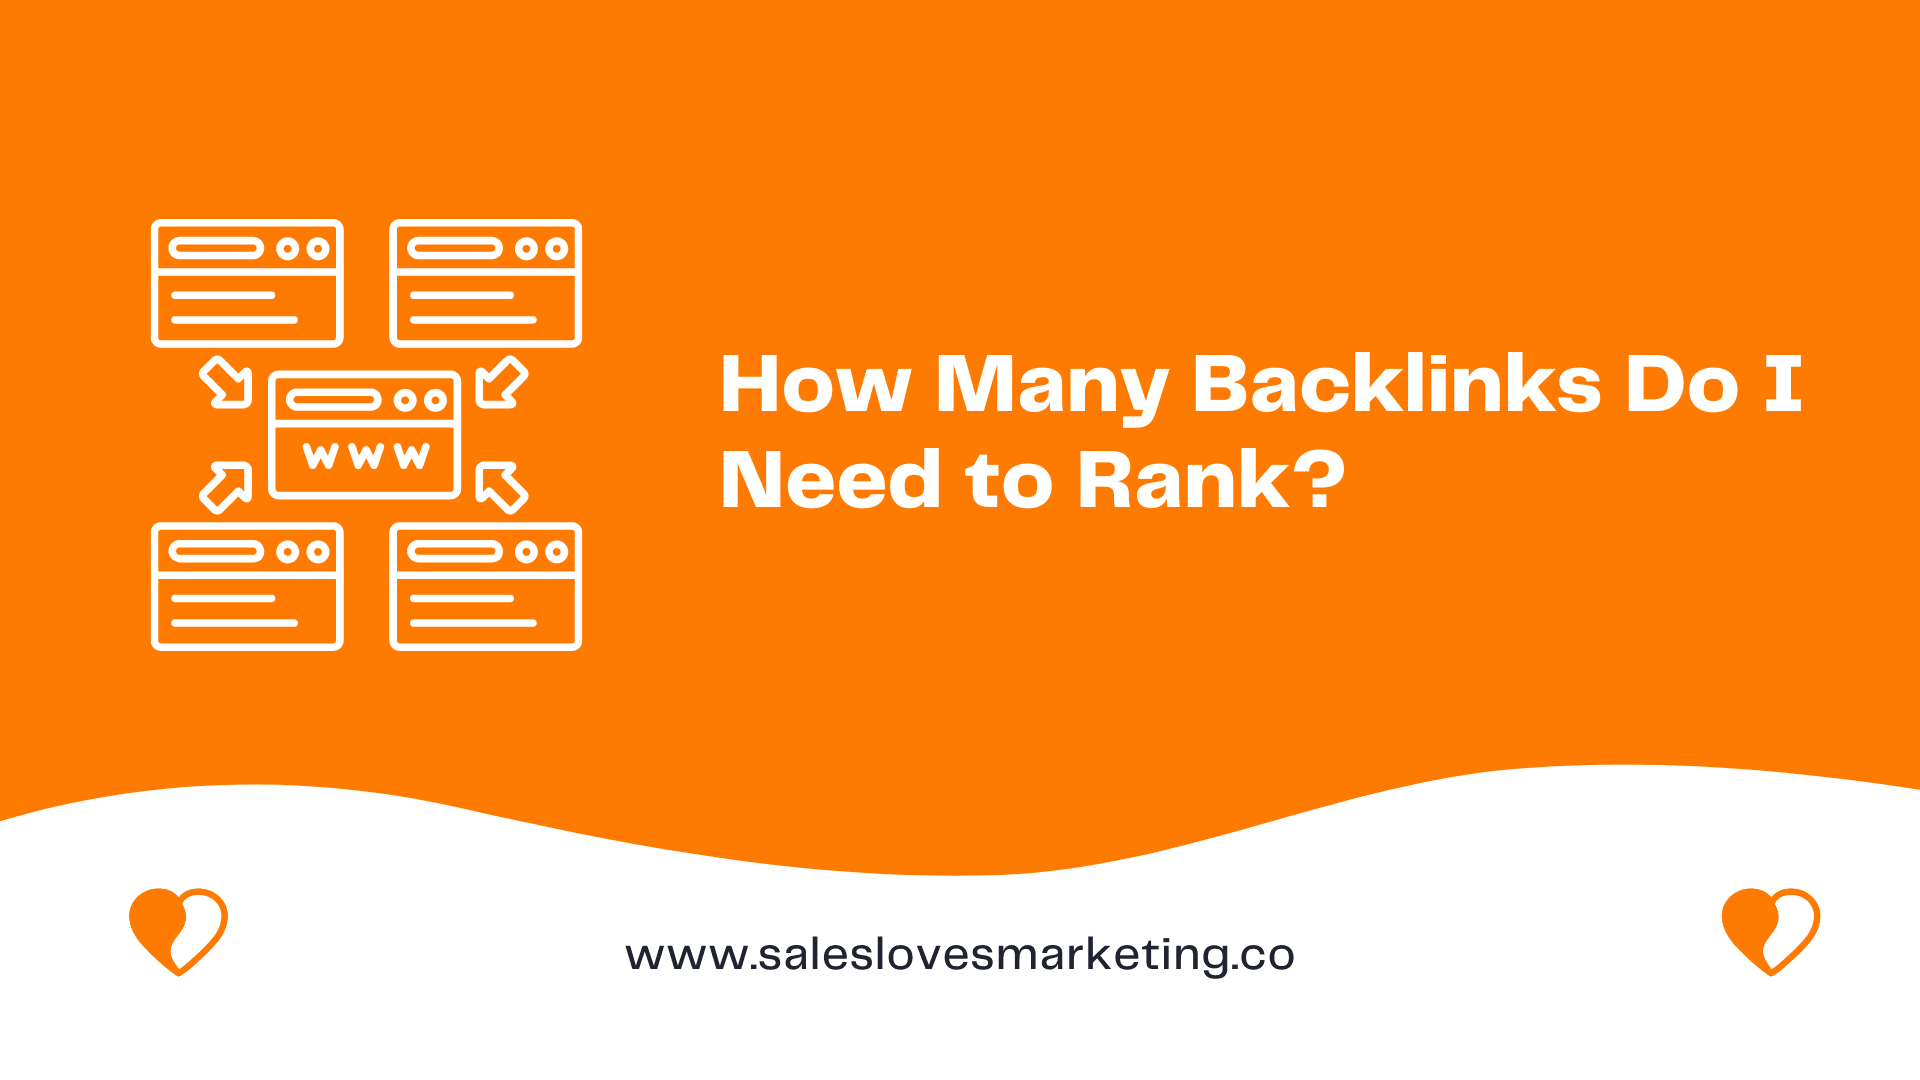 How Many Backlinks Do I Need to Rank?